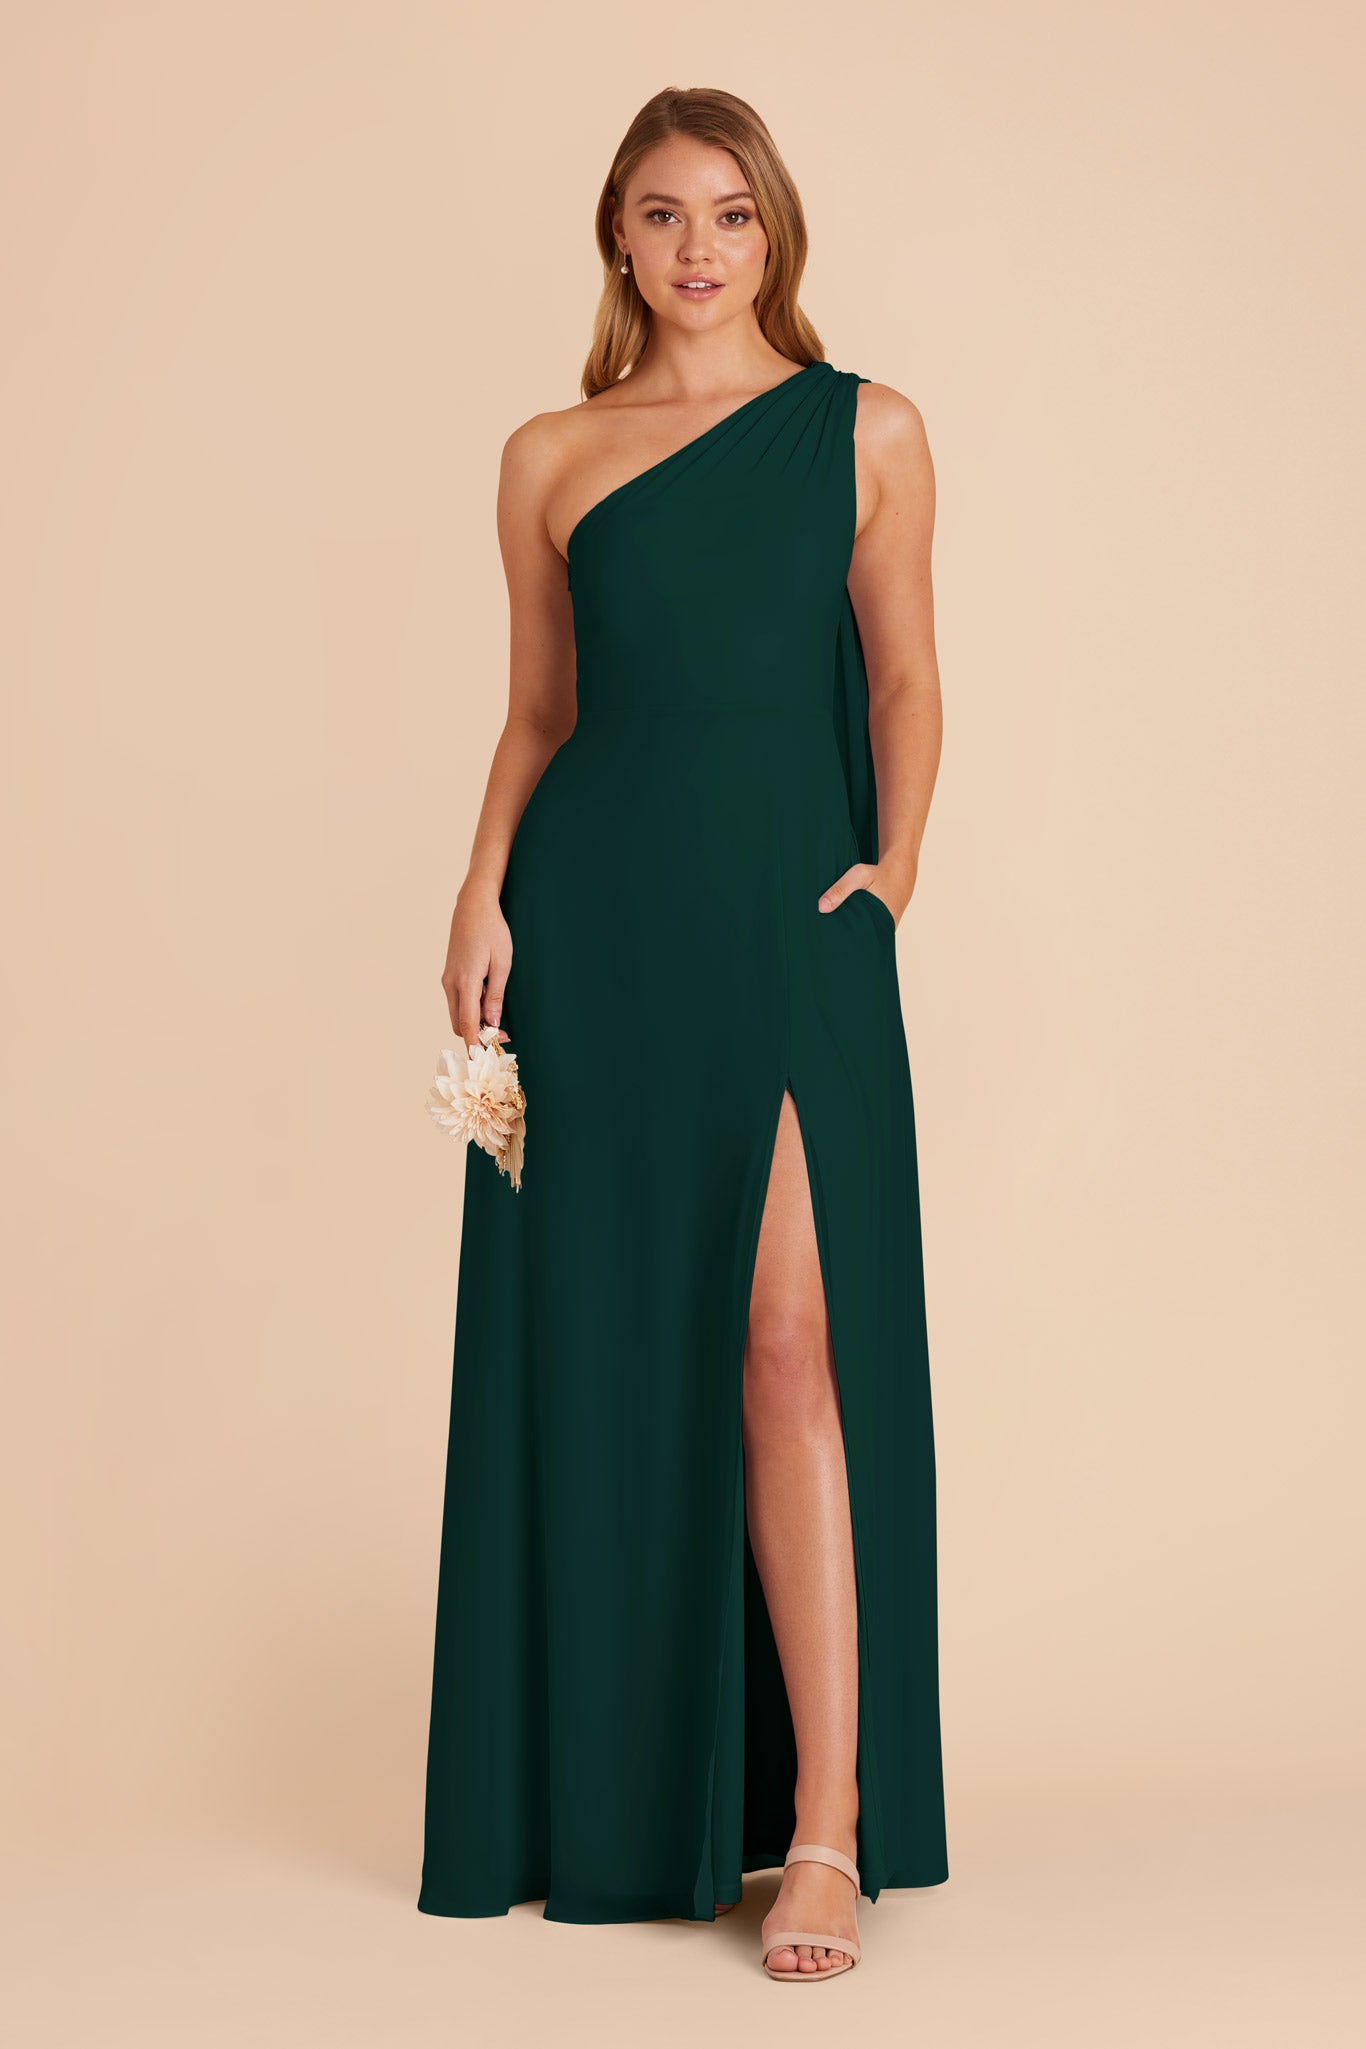 Emerald Melissa Chiffon Dress by Birdy Grey